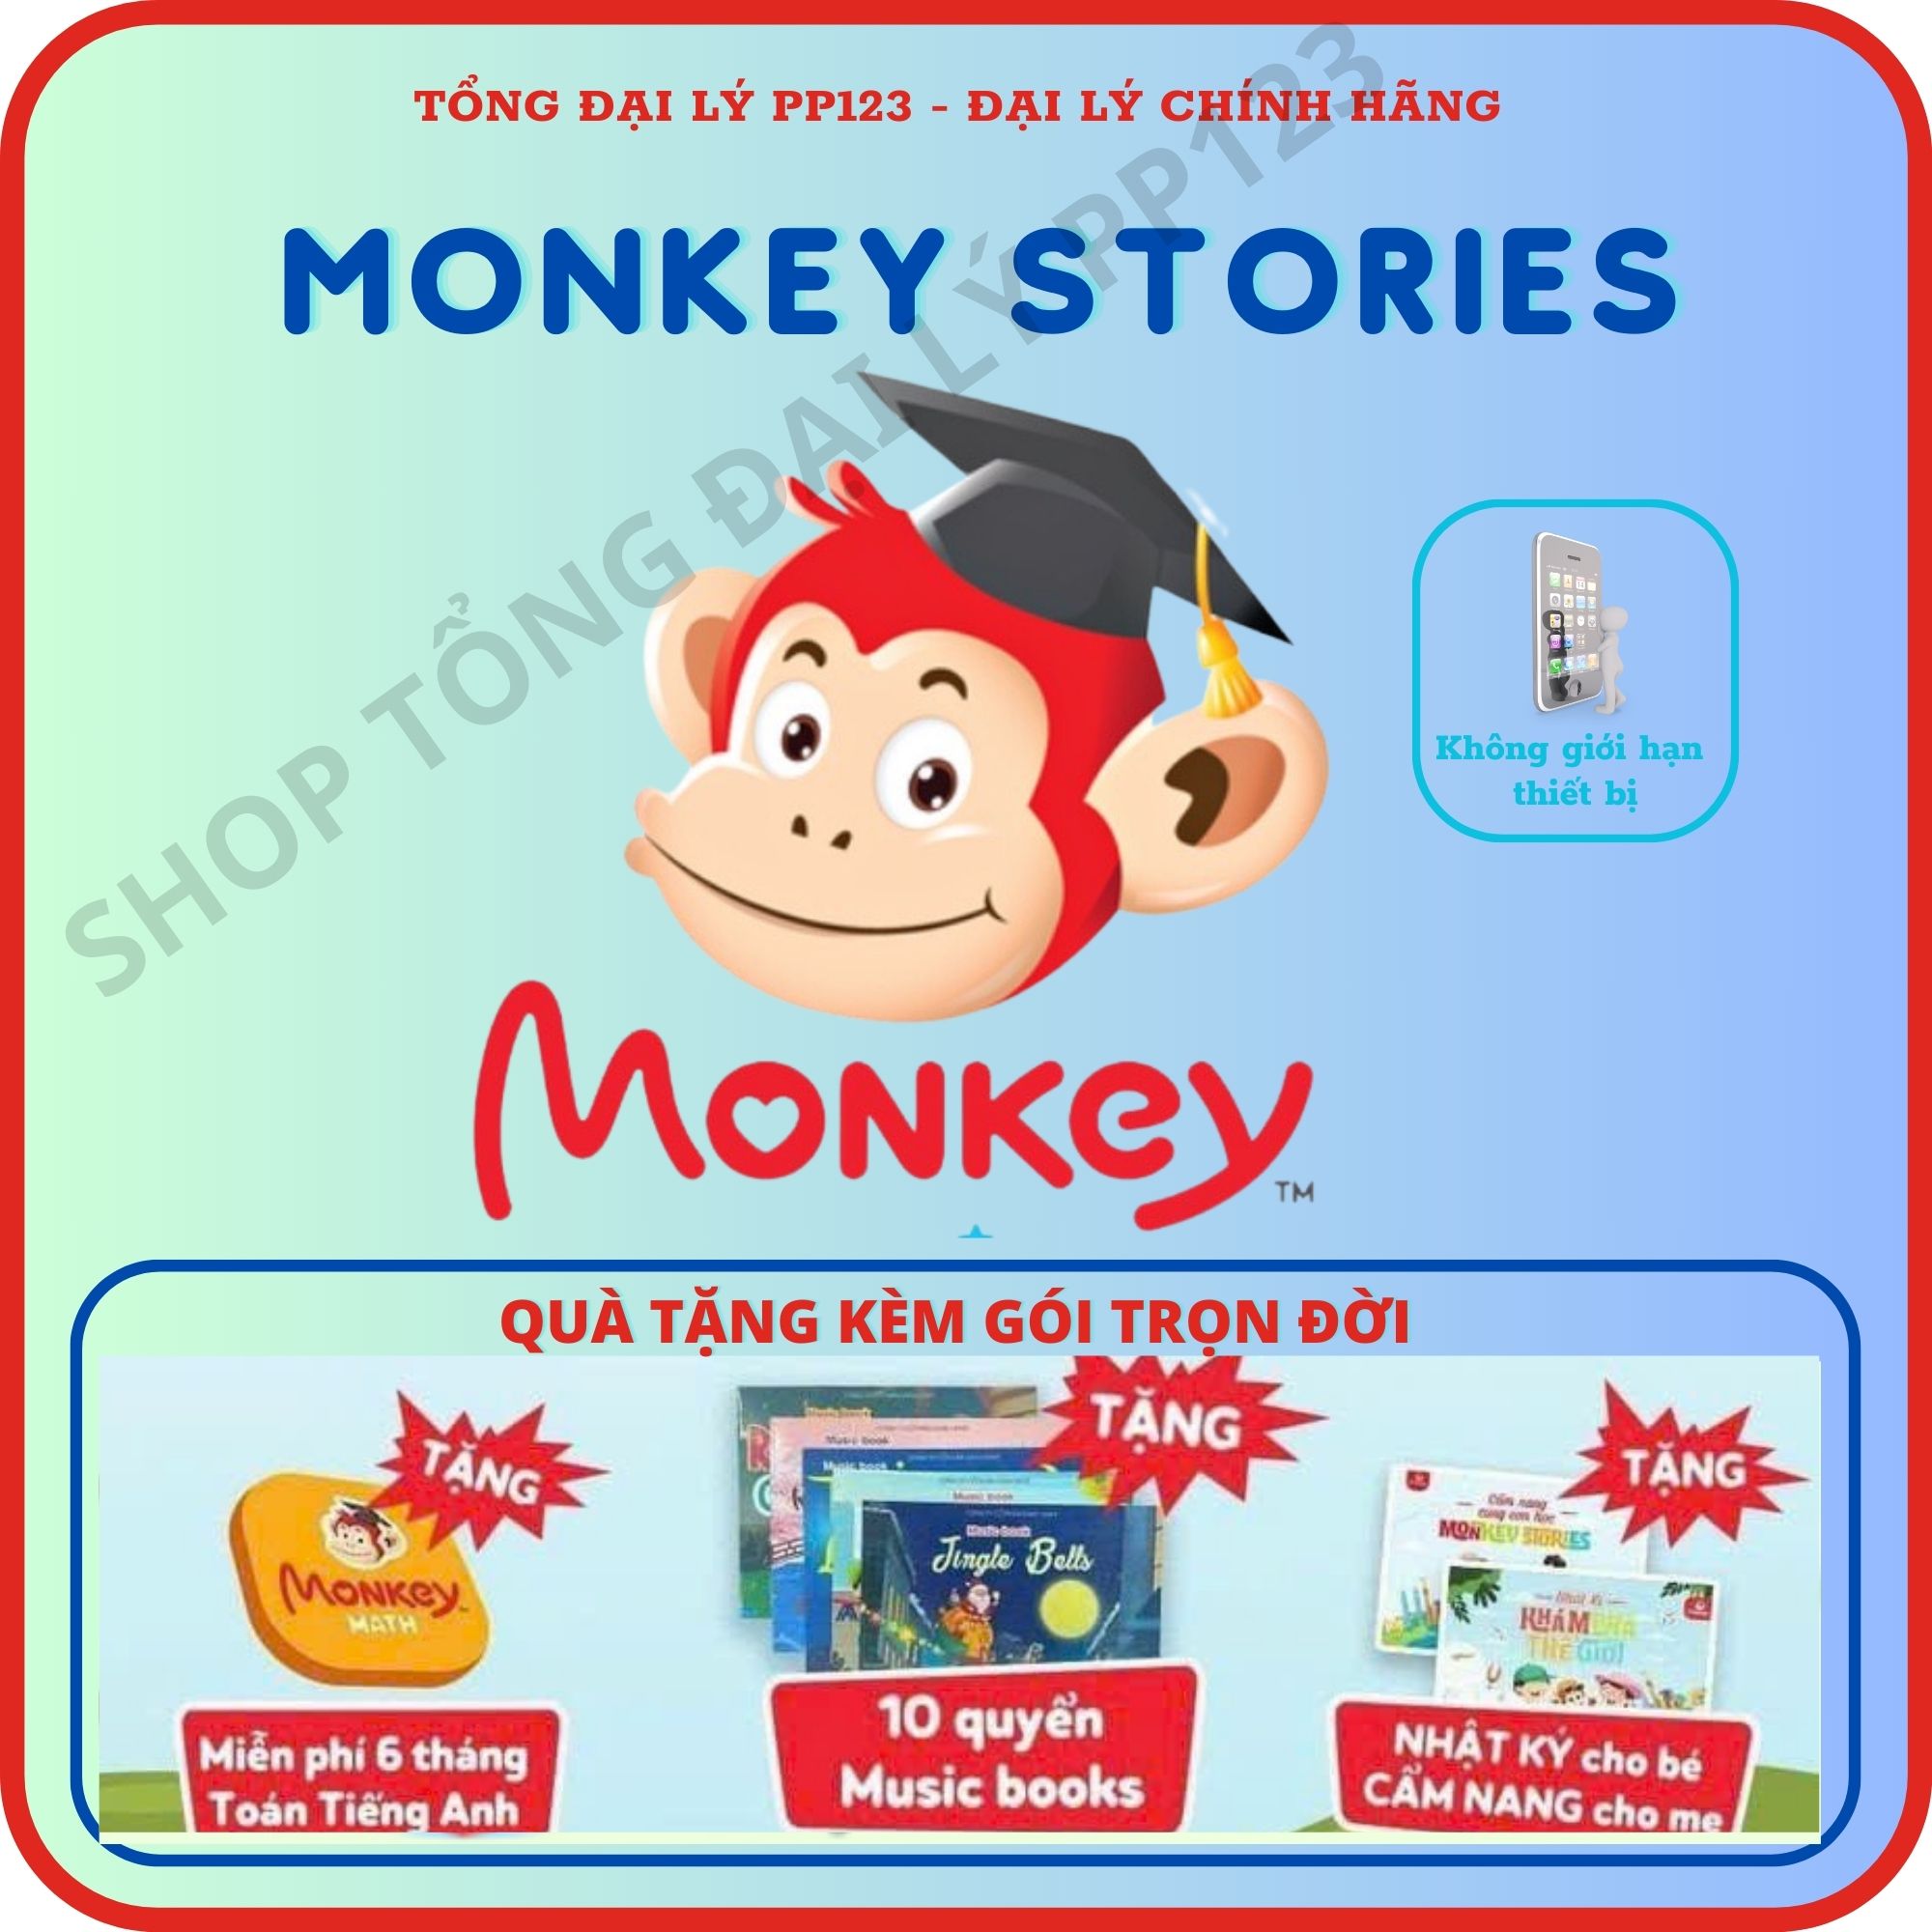 Monkey Stories  (Trọn đời, 1 năm)- VOUCHER - Phần mềm Tiếng anh online chất lượng cao cho bé